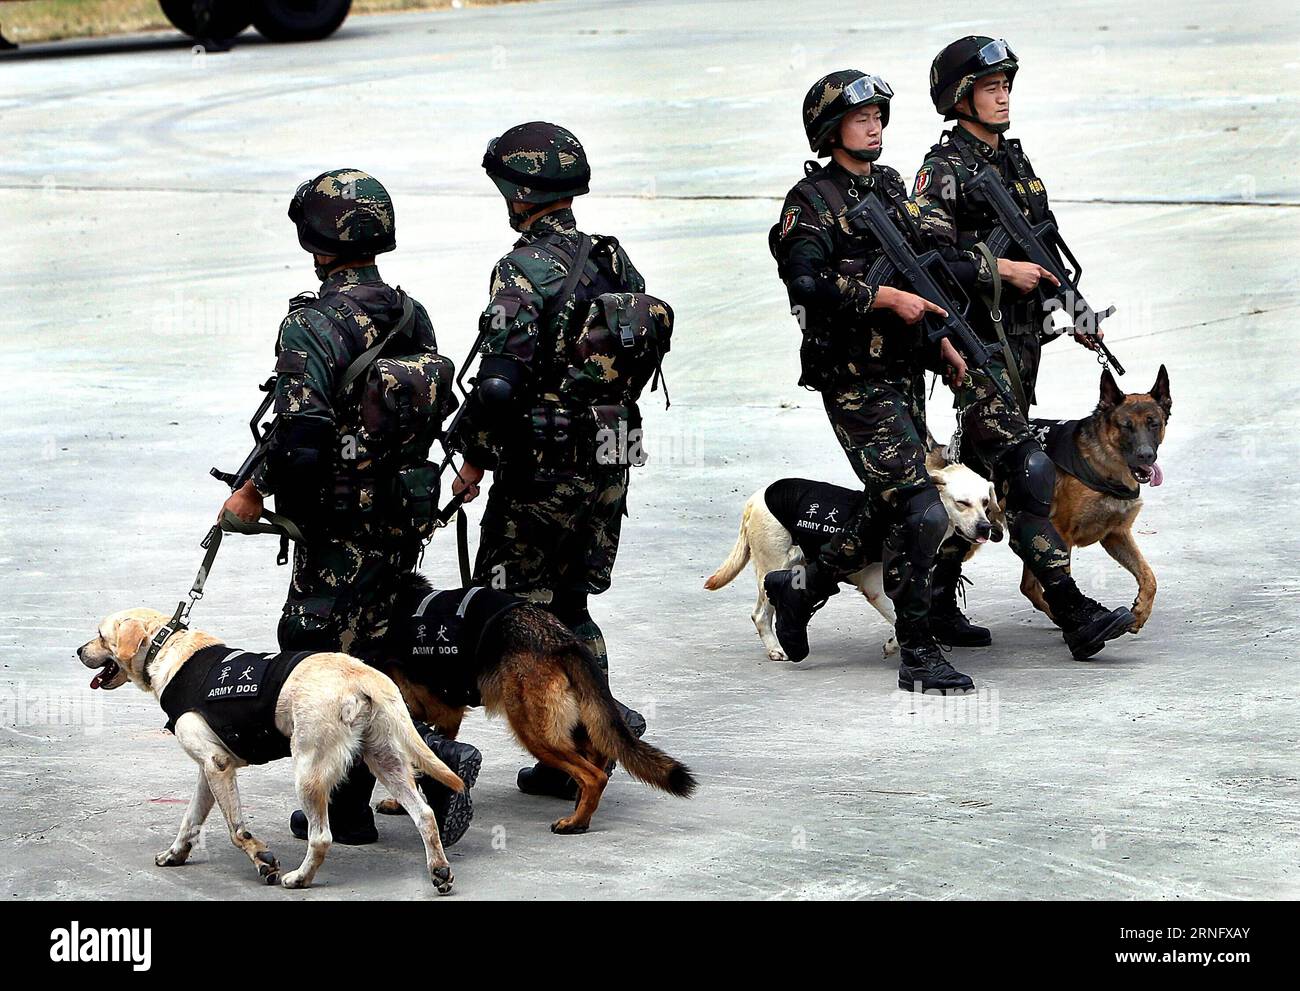 (160826) -- SHANGHAI, 26. August 2016 -- Soldaten patrouillieren mit Hunden während einer Anti-Terror-Übung in Shanghai, Ostchina, 26. August 2016. ) (Yxb) CHINA-SHANGHAI-ANTI-TERROR-BOHRER (CN) FanxJun PUBLICATIONxNOTxINxCHN 160826 Shanghai Aug 26 2016 Soldaten Patrouille mit Hunden während der Anti-Terror-Bohrer in Shanghai Ostchina Aug 26 2016 yxb China Shanghai Anti-Terror-Bohrer CN FanxJun PUBLICATIONxNOTxINxCHN Stockfoto